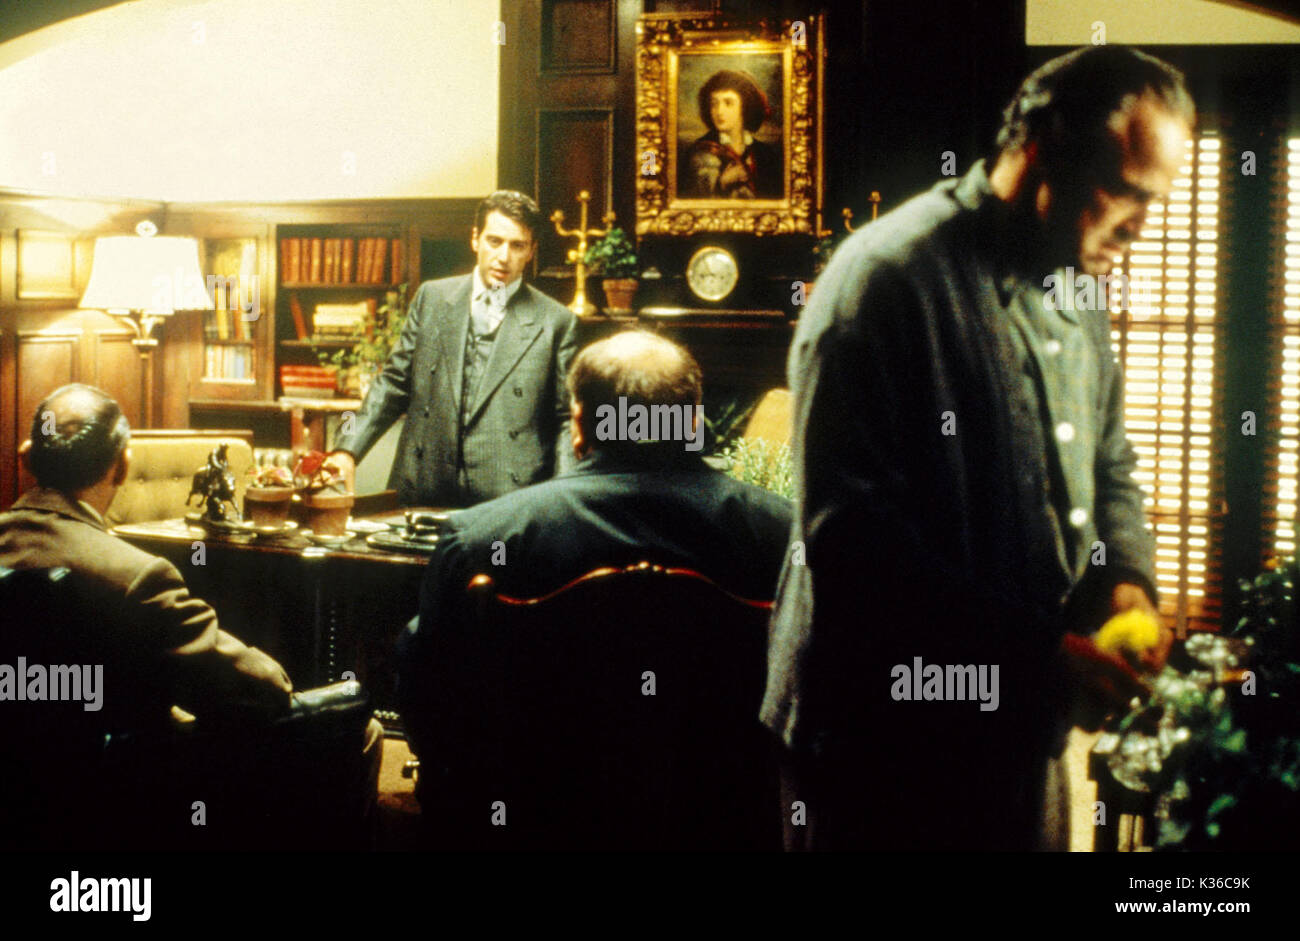 THE GODFATHER ABE VIGODA , AL PACINO as Micheal Corleone, RICHARD CASTELLANO [back to camera] MARLON BRANDO as Vito Corleone     Date: 1972 Stock Photo